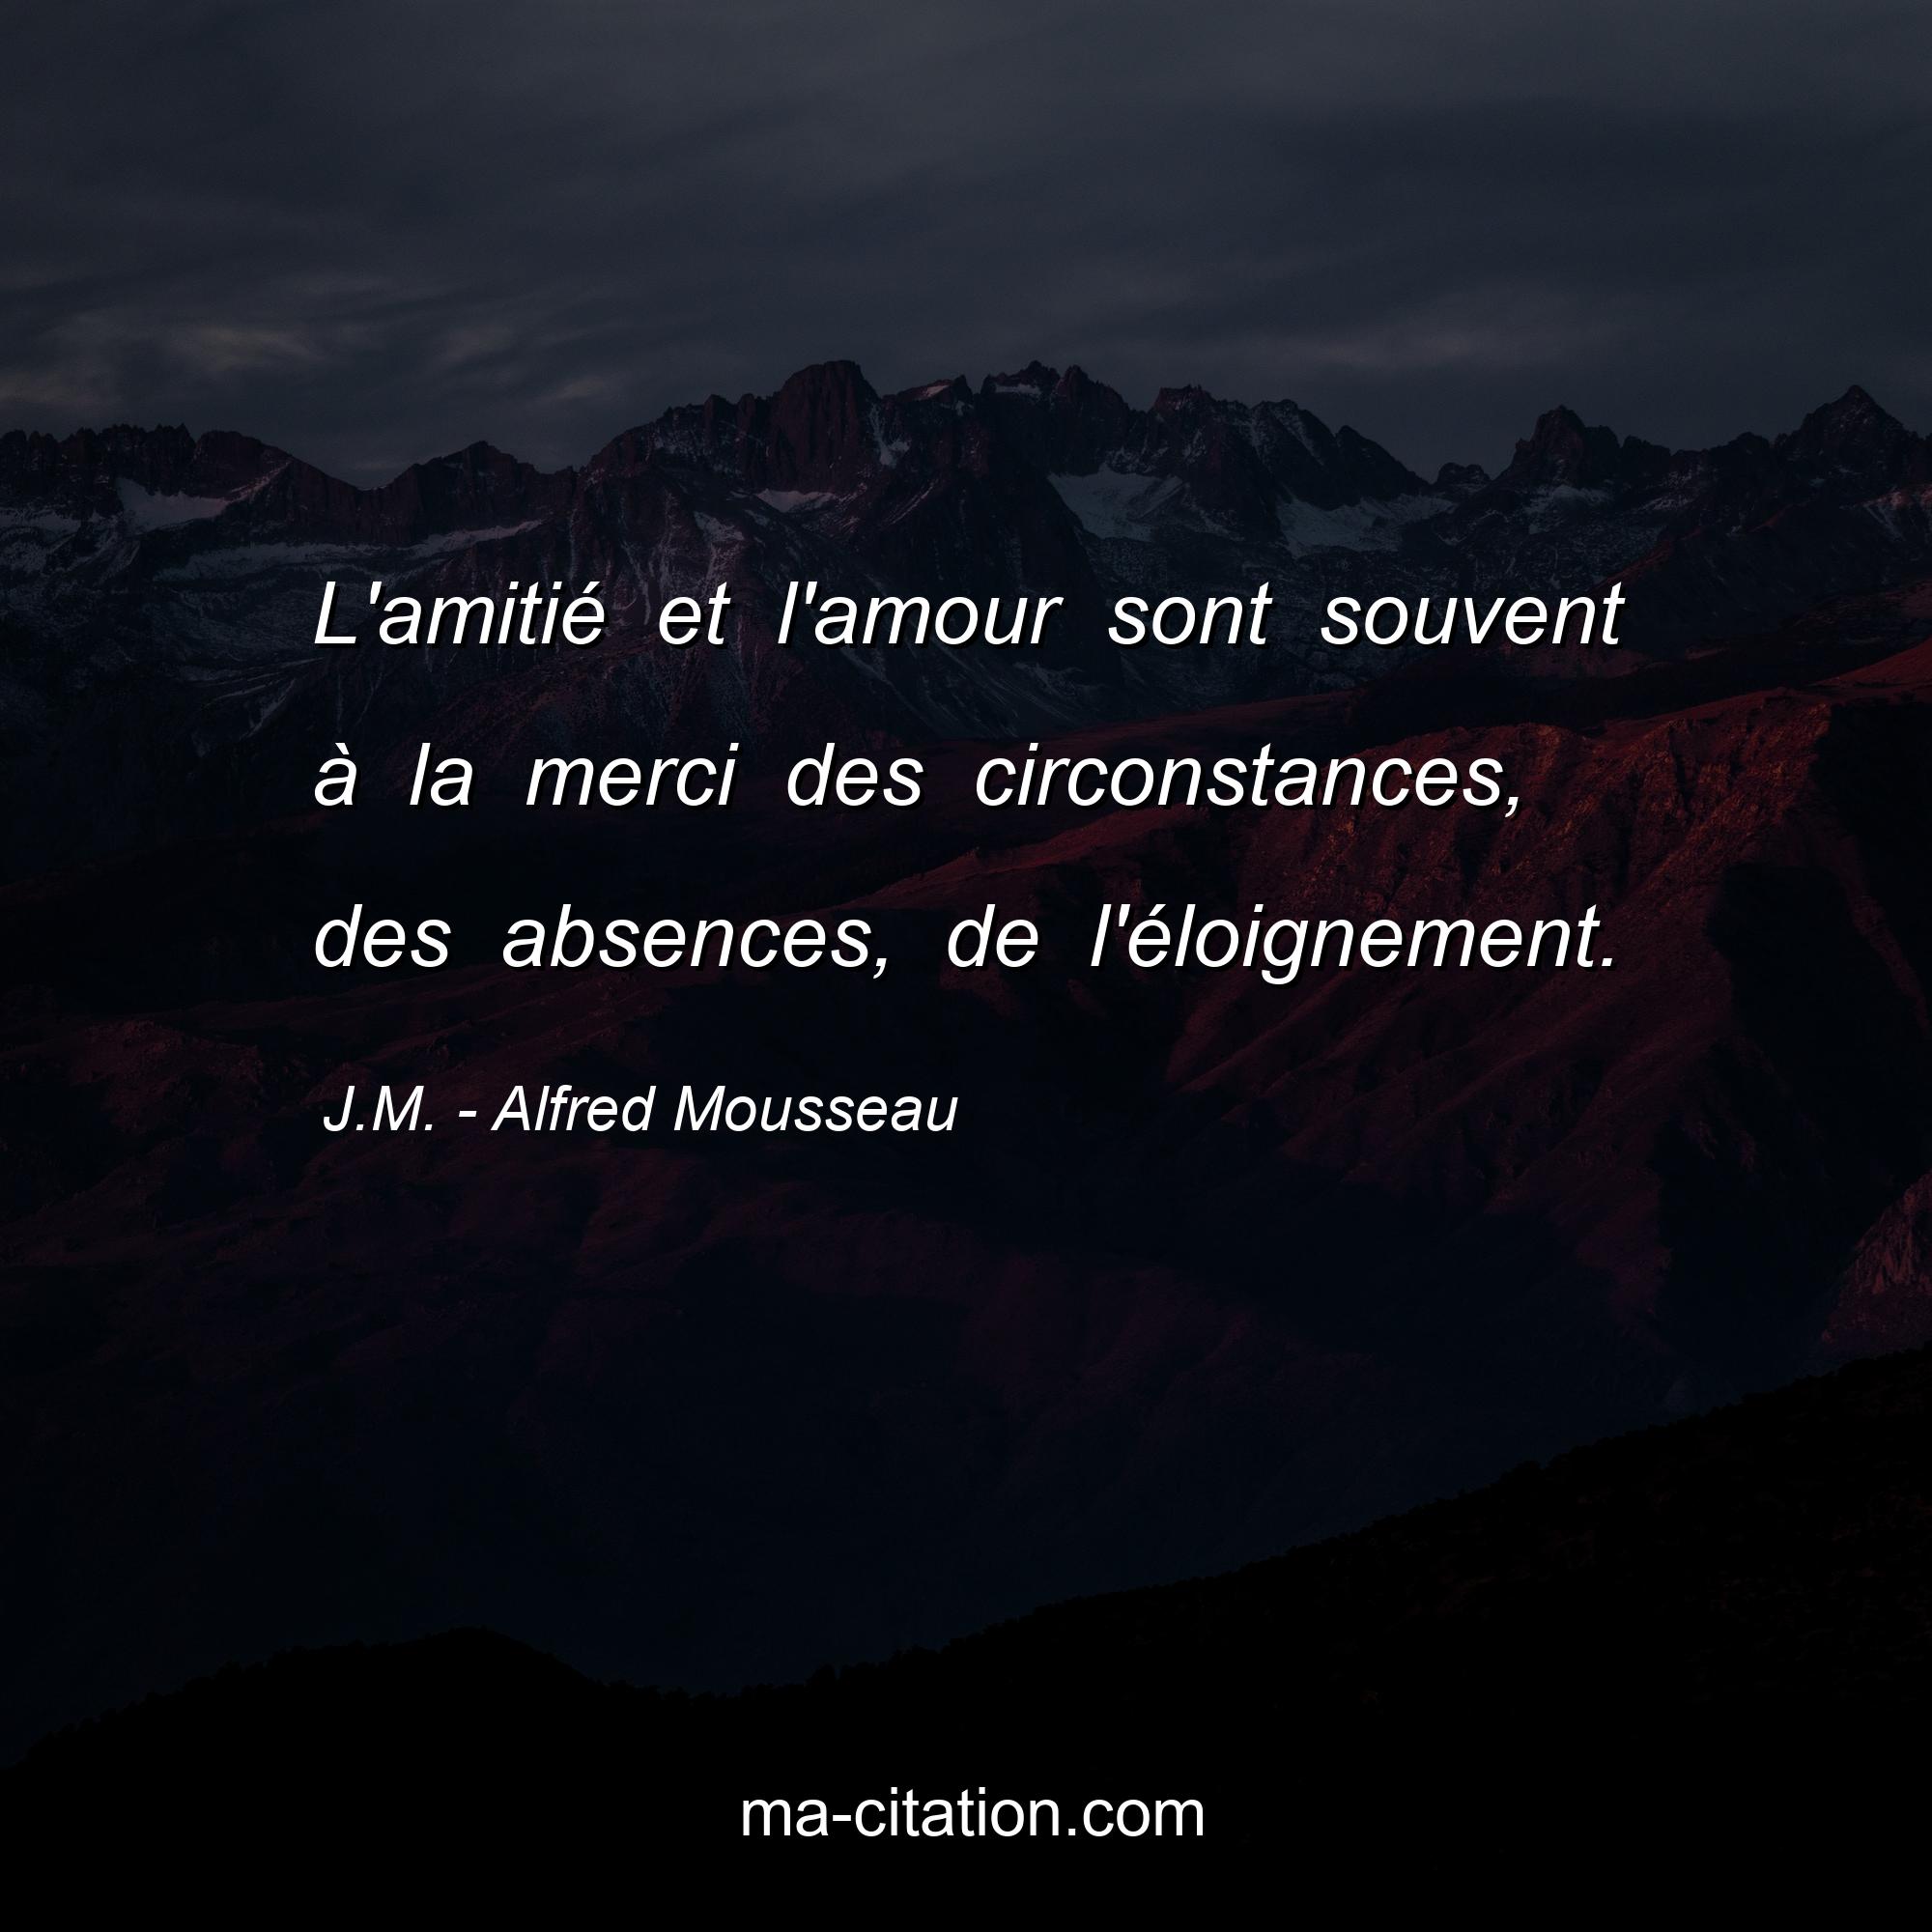 J.M. - Alfred Mousseau : L'amitié et l'amour sont souvent à la merci des circonstances, des absences, de l'éloignement.